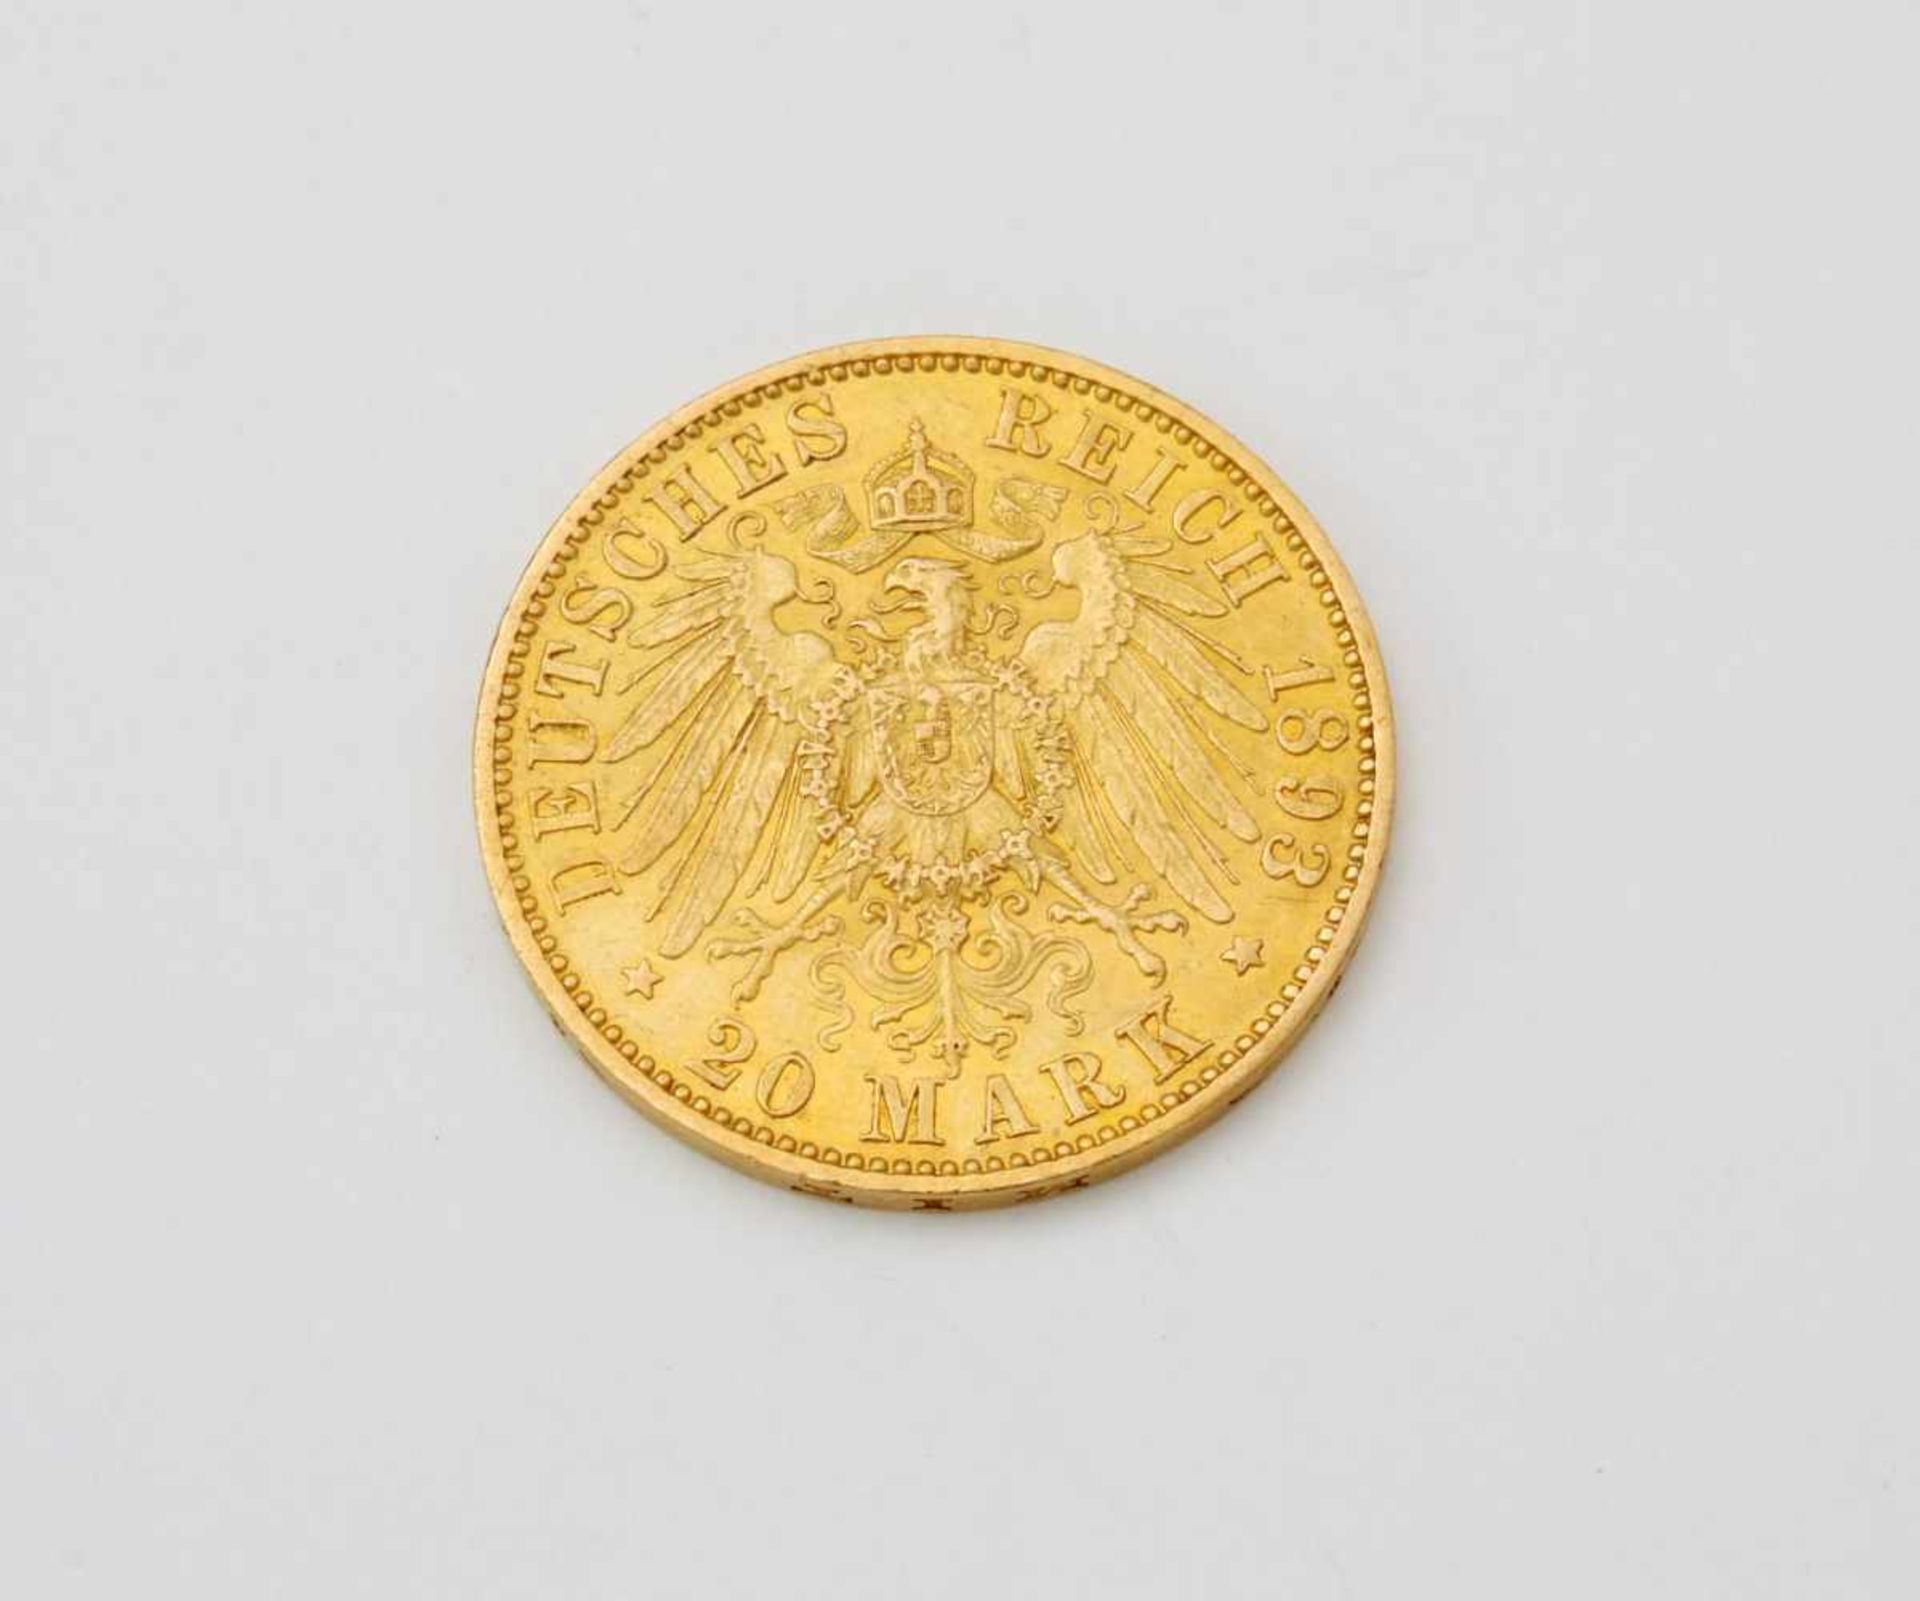 Goldmünze 20 Mark - Deutsches Reich Wilhelm II.Vorzüglich, Prägestelle A, 900er, 1893, 7,8 g. - Bild 2 aus 2